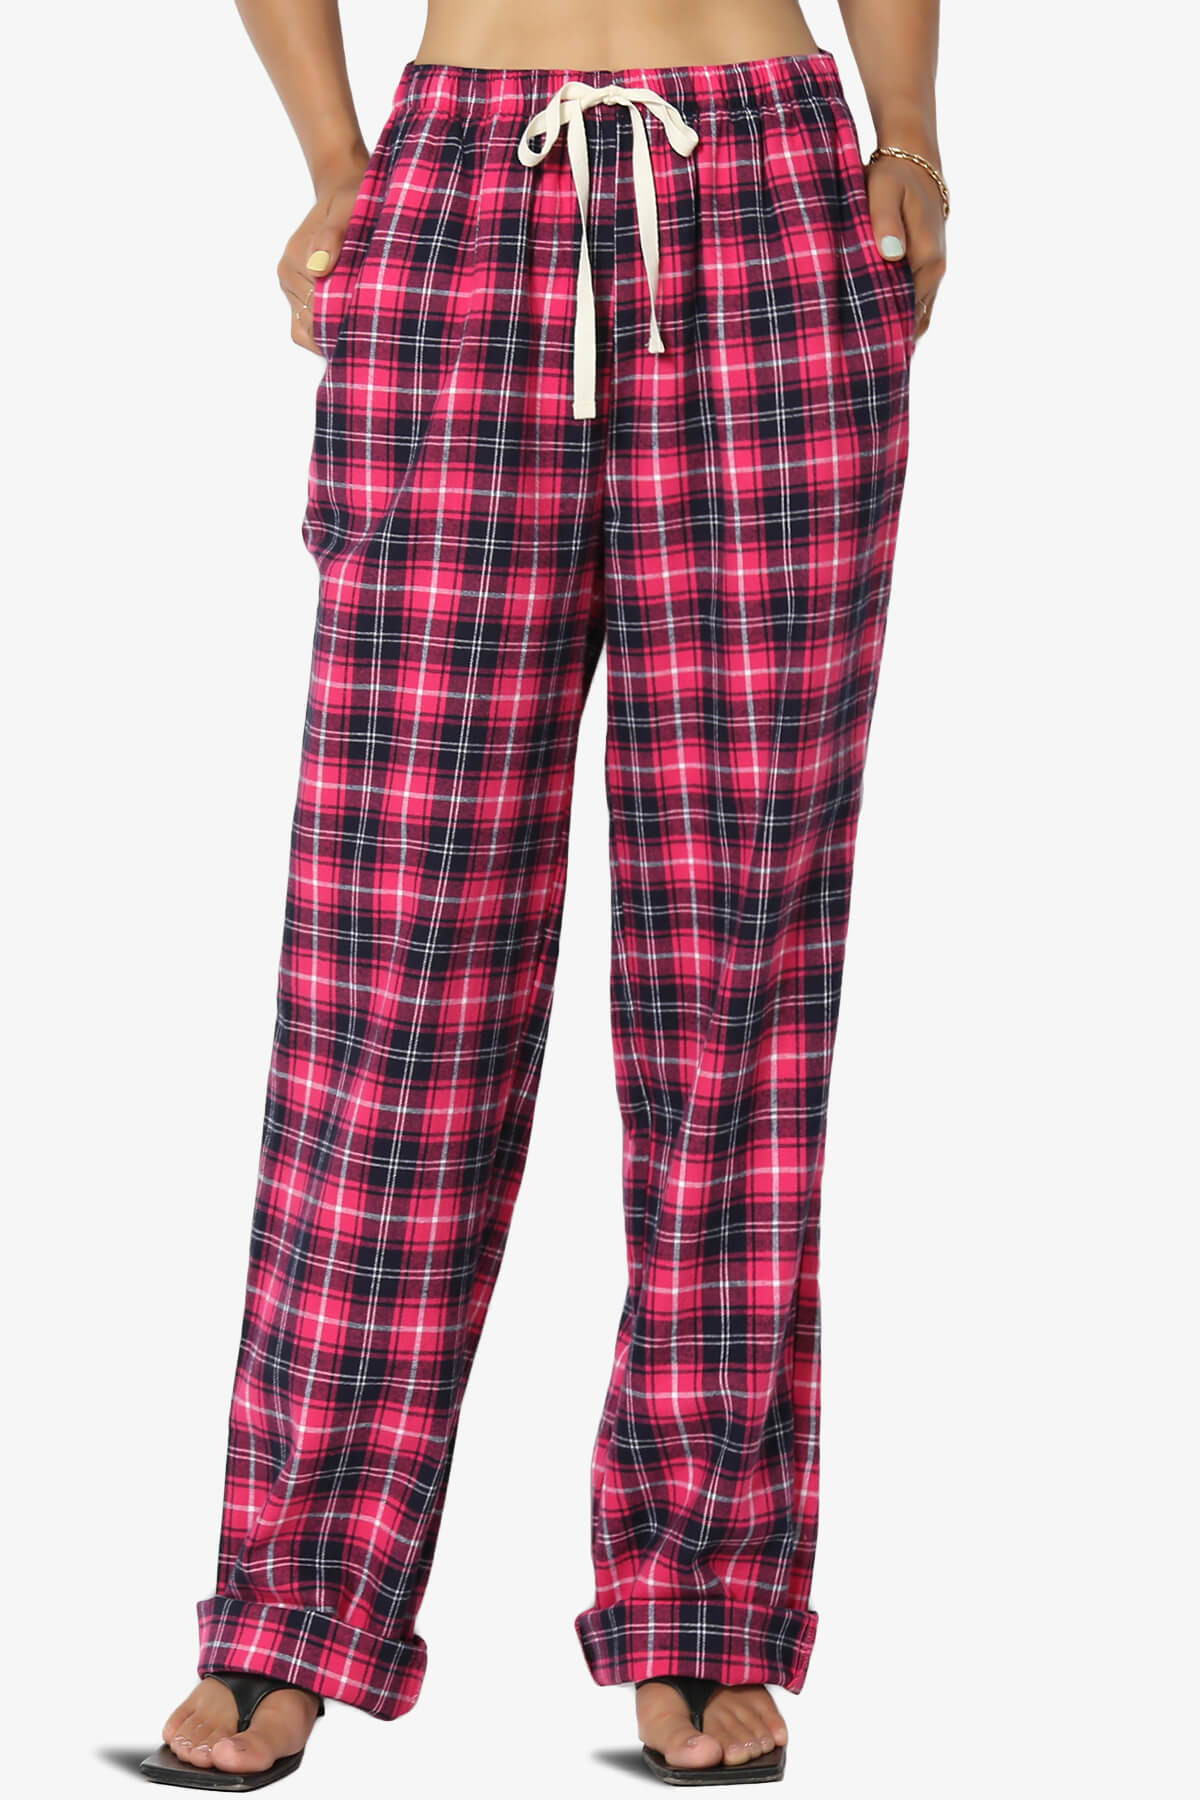 Pajama Pants for Women 100% Cotton Flannel Plaid Lounge Pants 